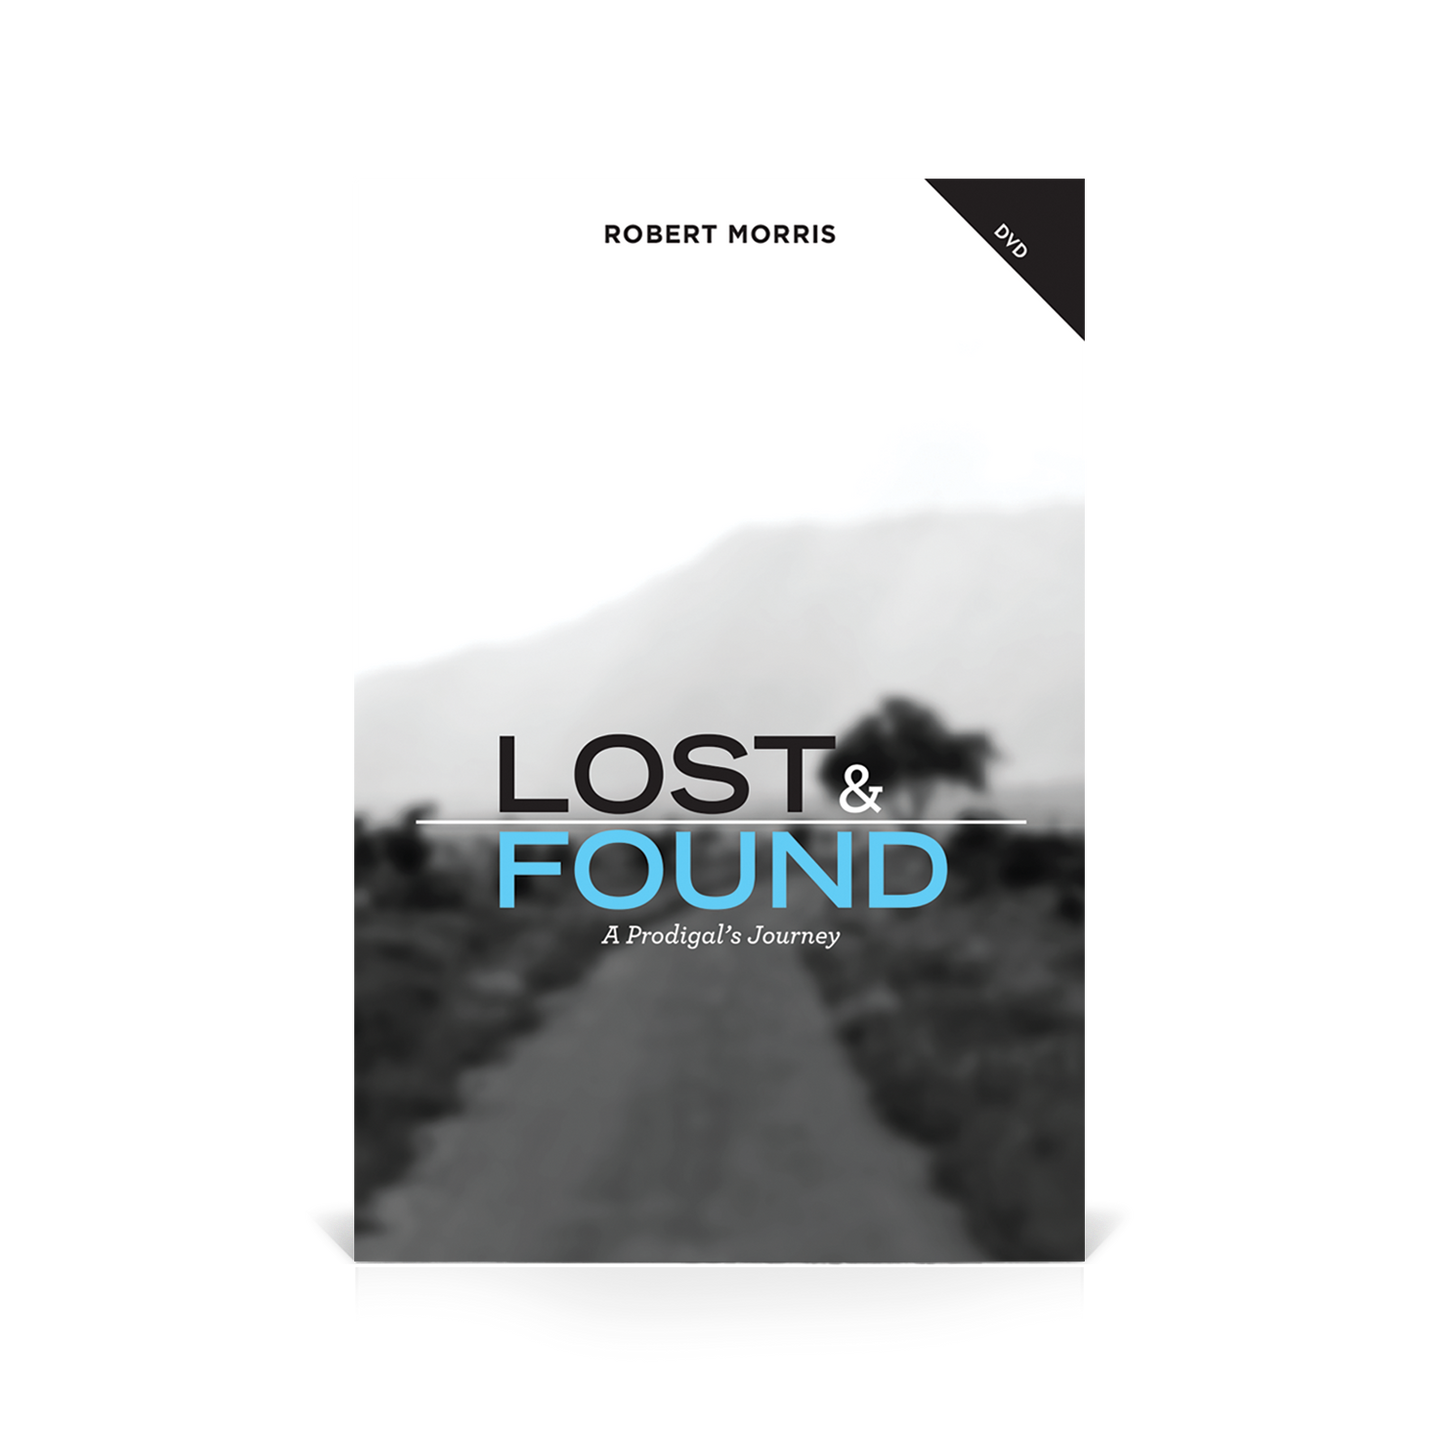 Lost & Found DVD